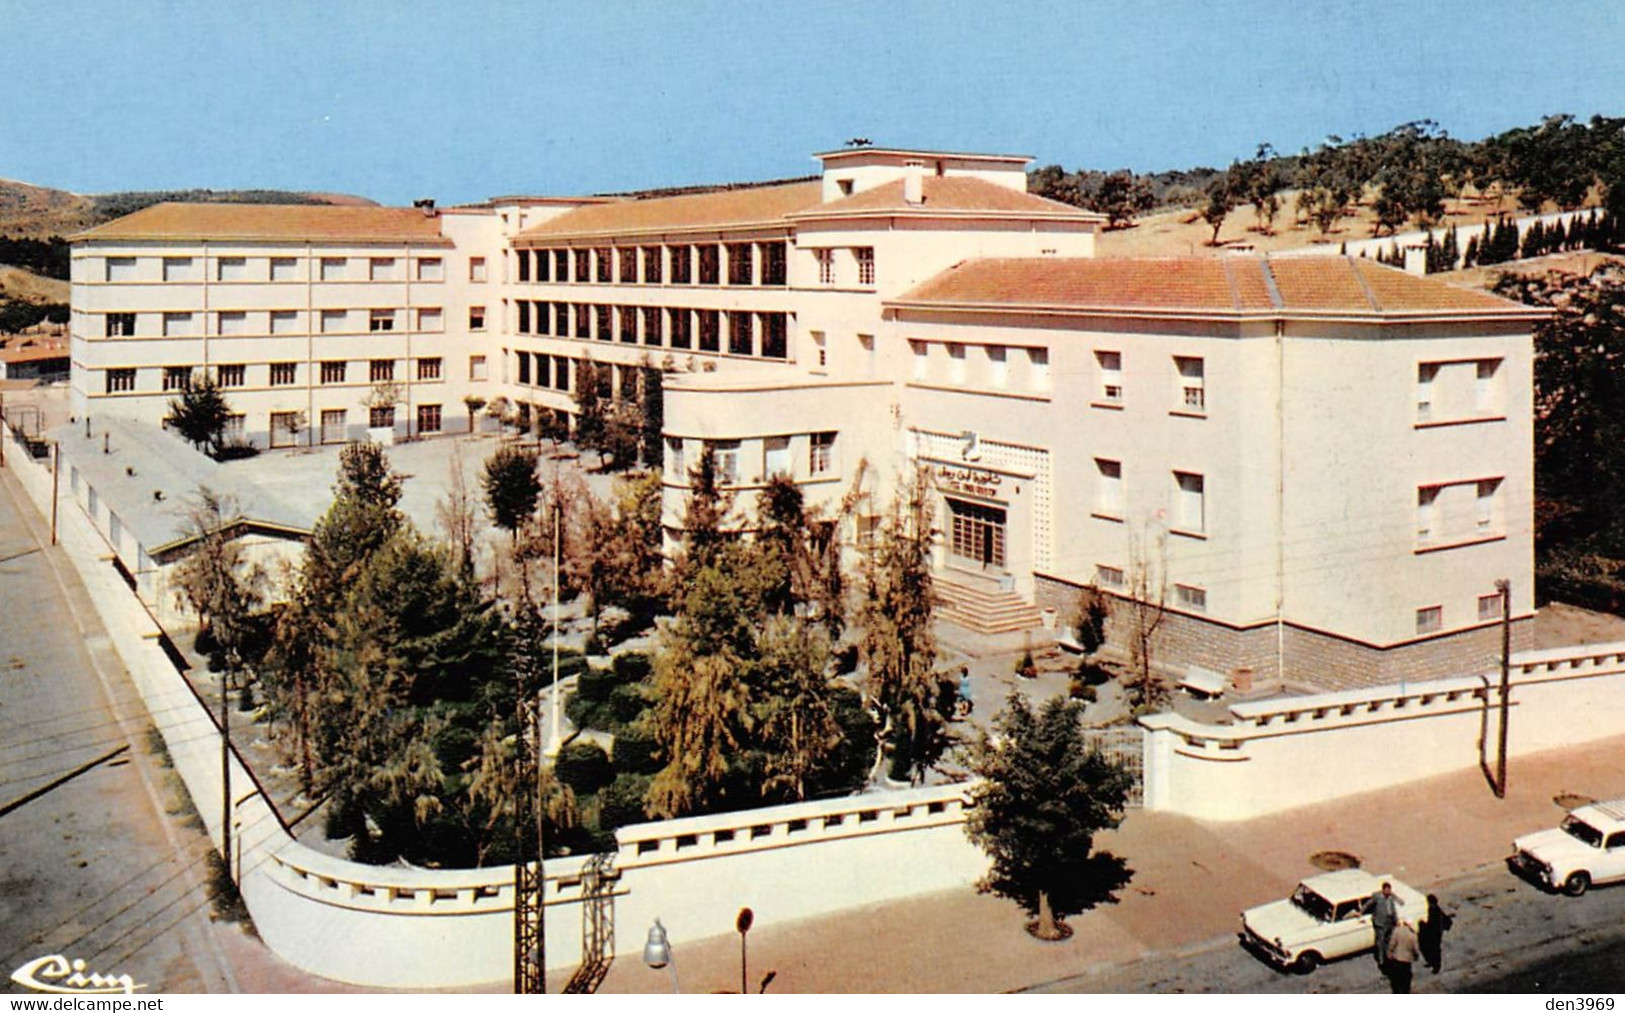 Algérie - TIARET - Le Lycée Ibnon-Roustoum - Tiaret